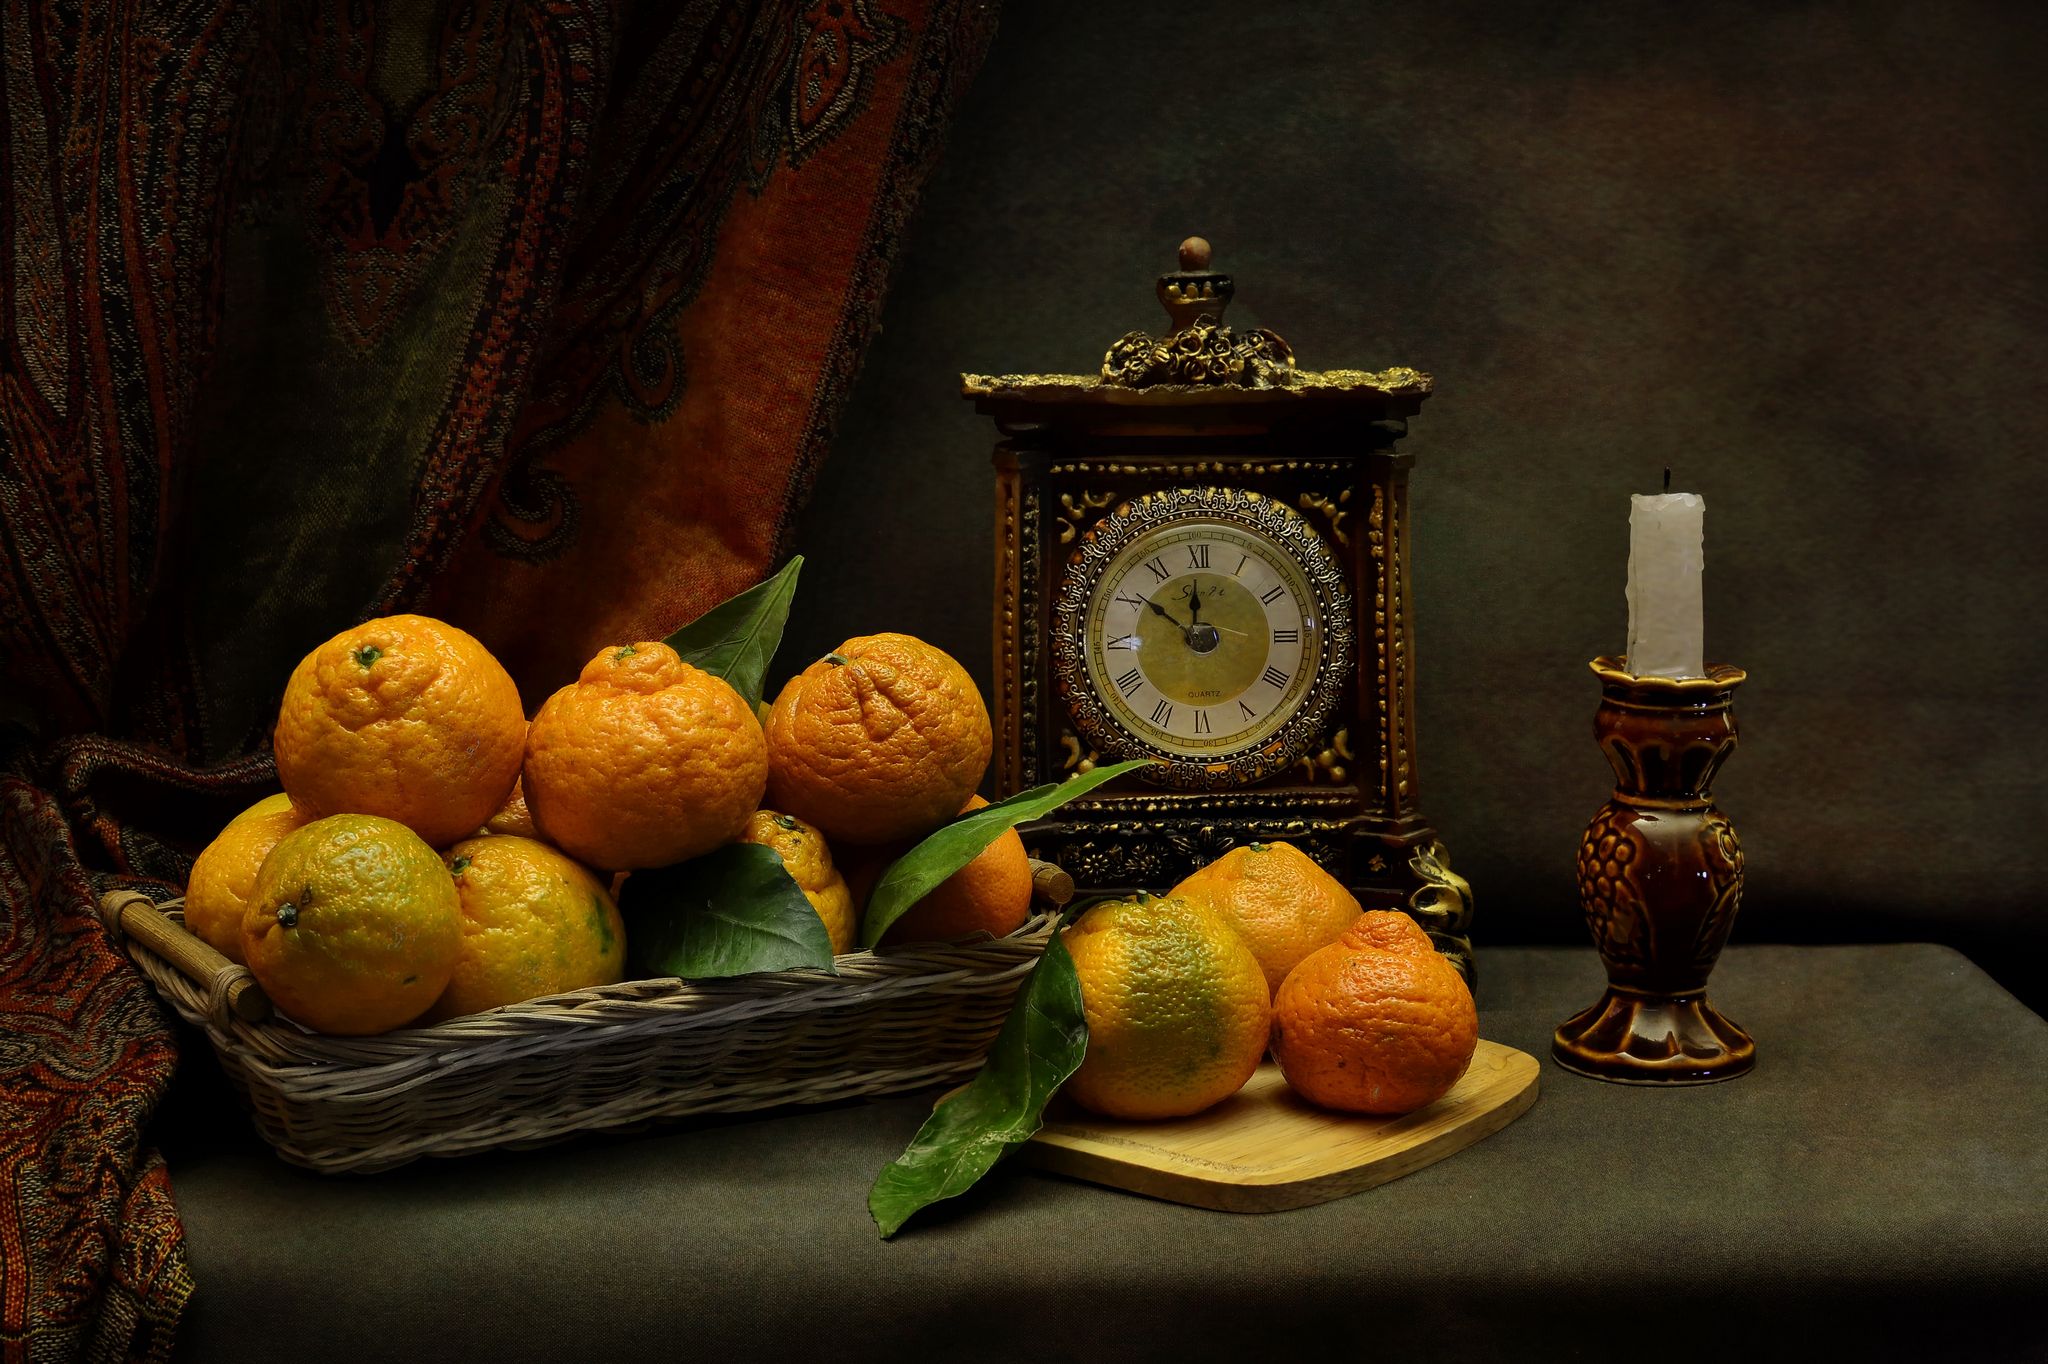 мандарины,часы,свеча,праздник, Инаида